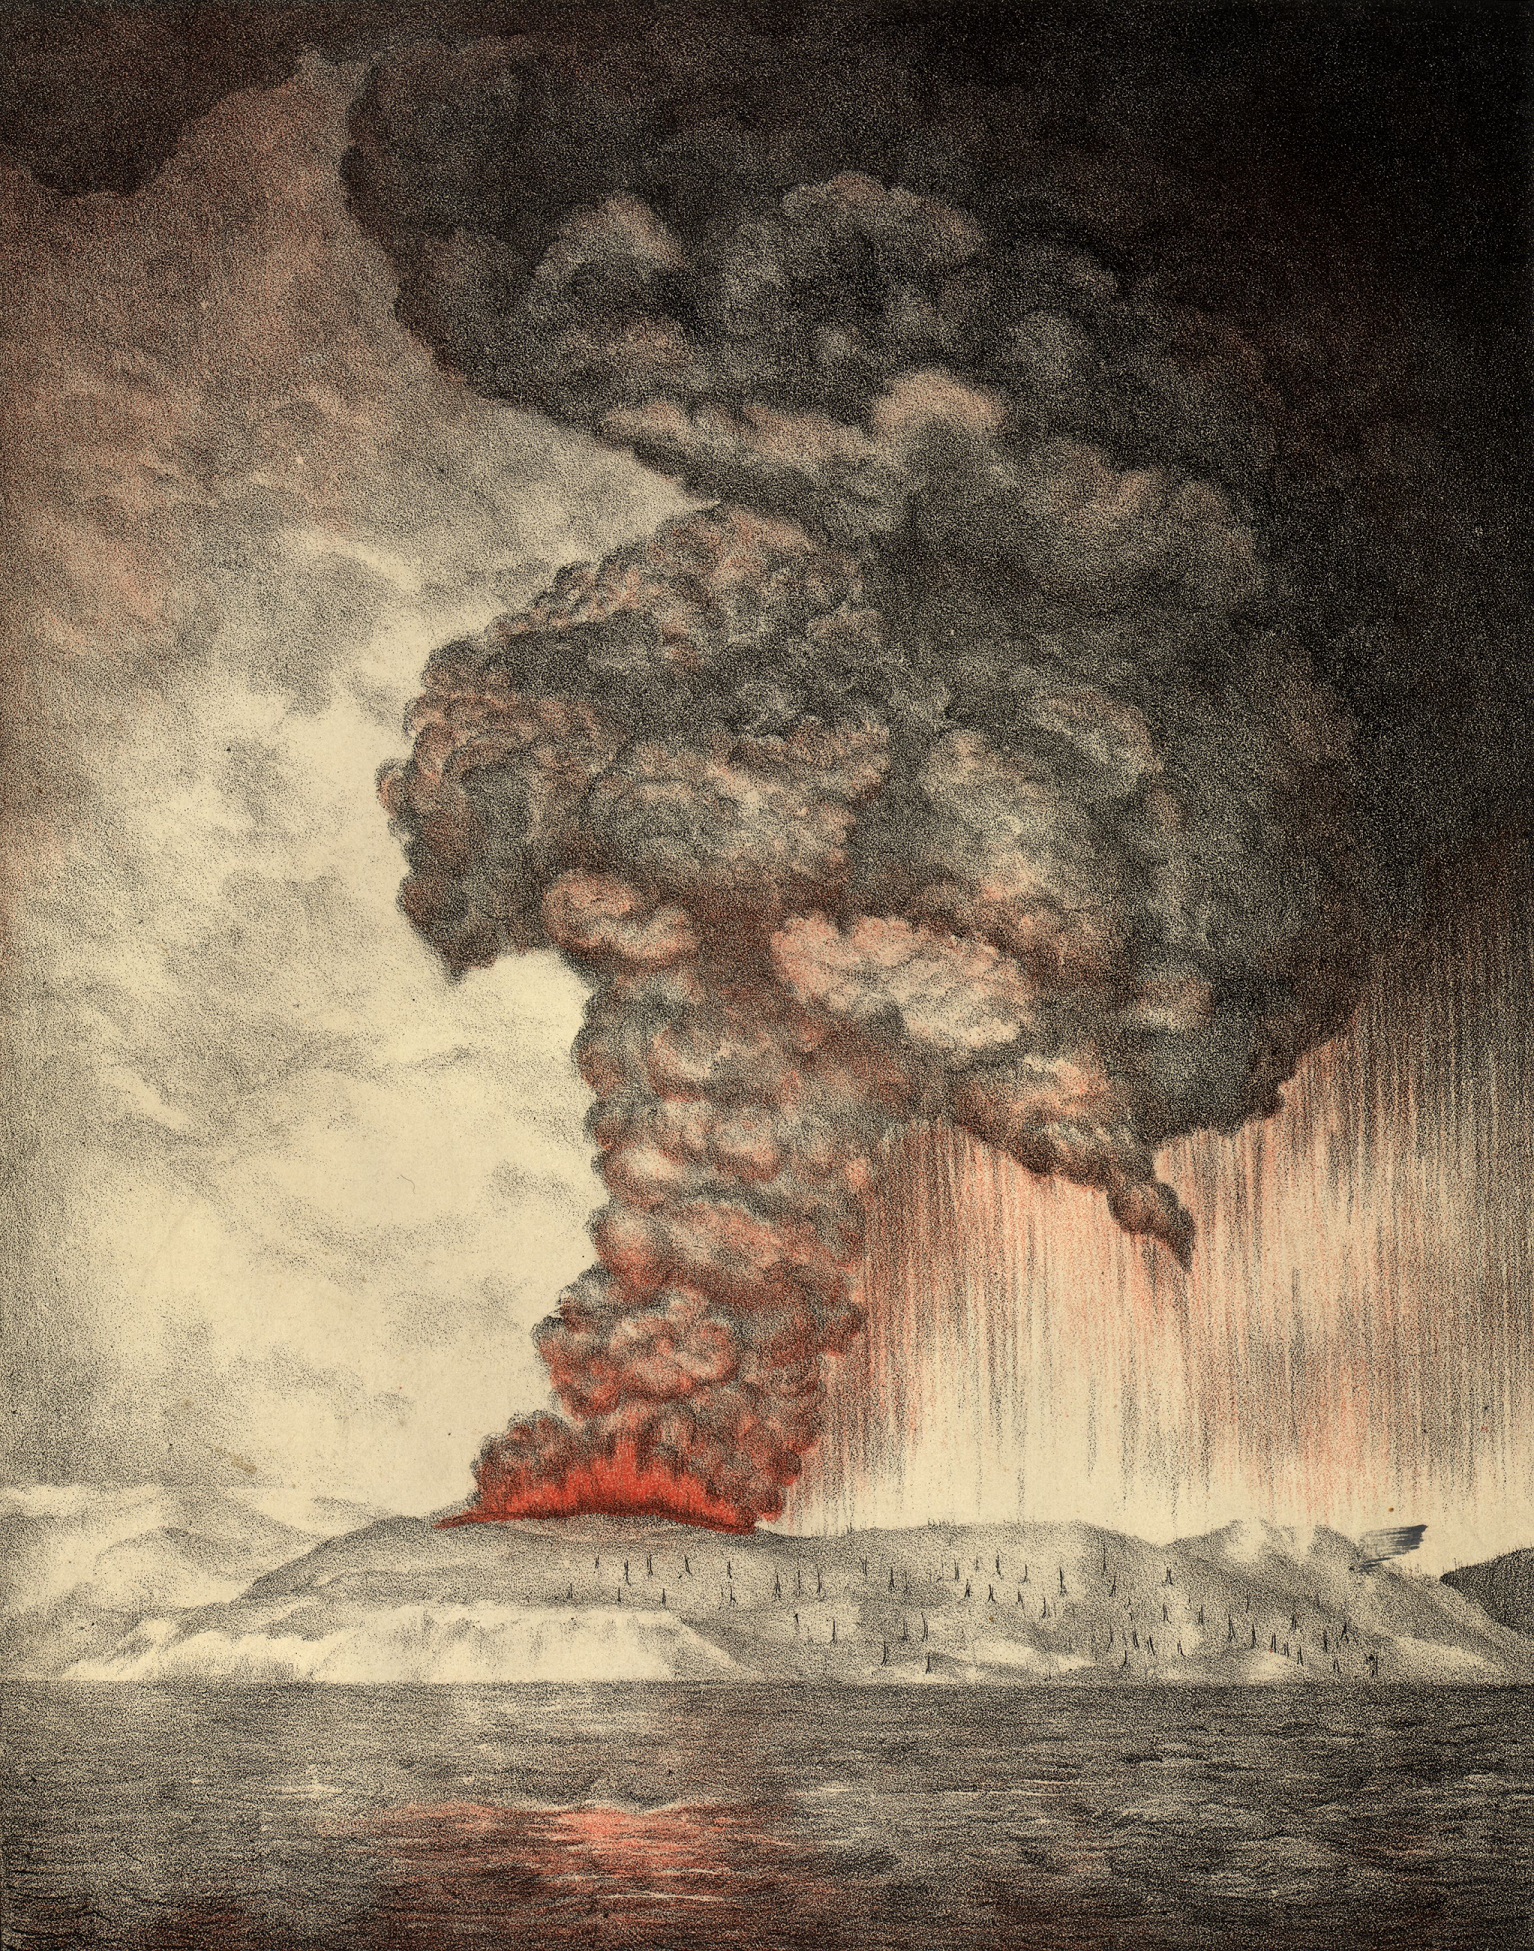 英国皇家学会喀拉喀托委员会的报告中的关于喀拉喀托火山爆发的平版画